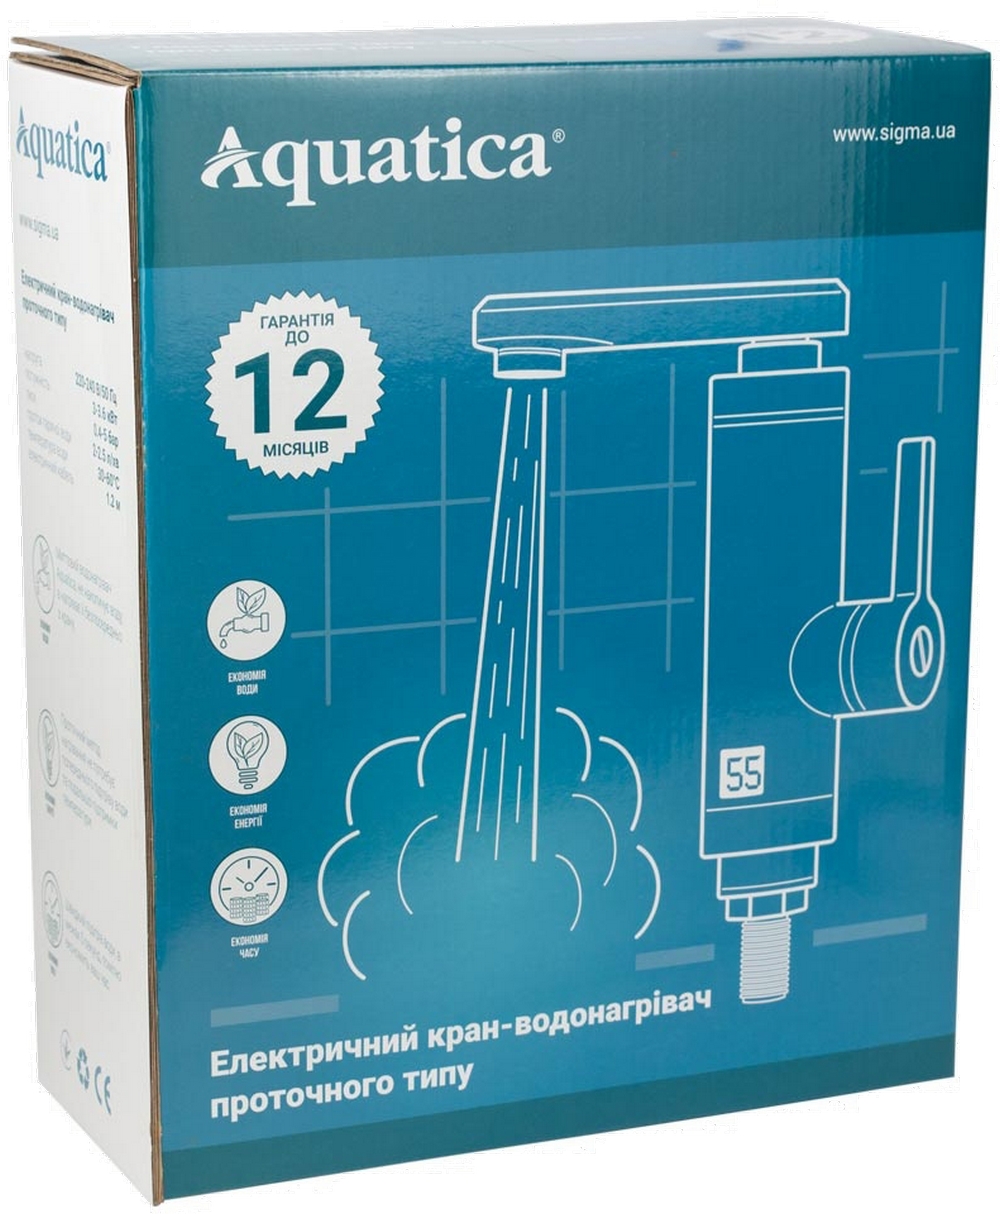 Проточный водонагреватель Aquatica NZ-6B242W цена 1118.00 грн - фотография 2